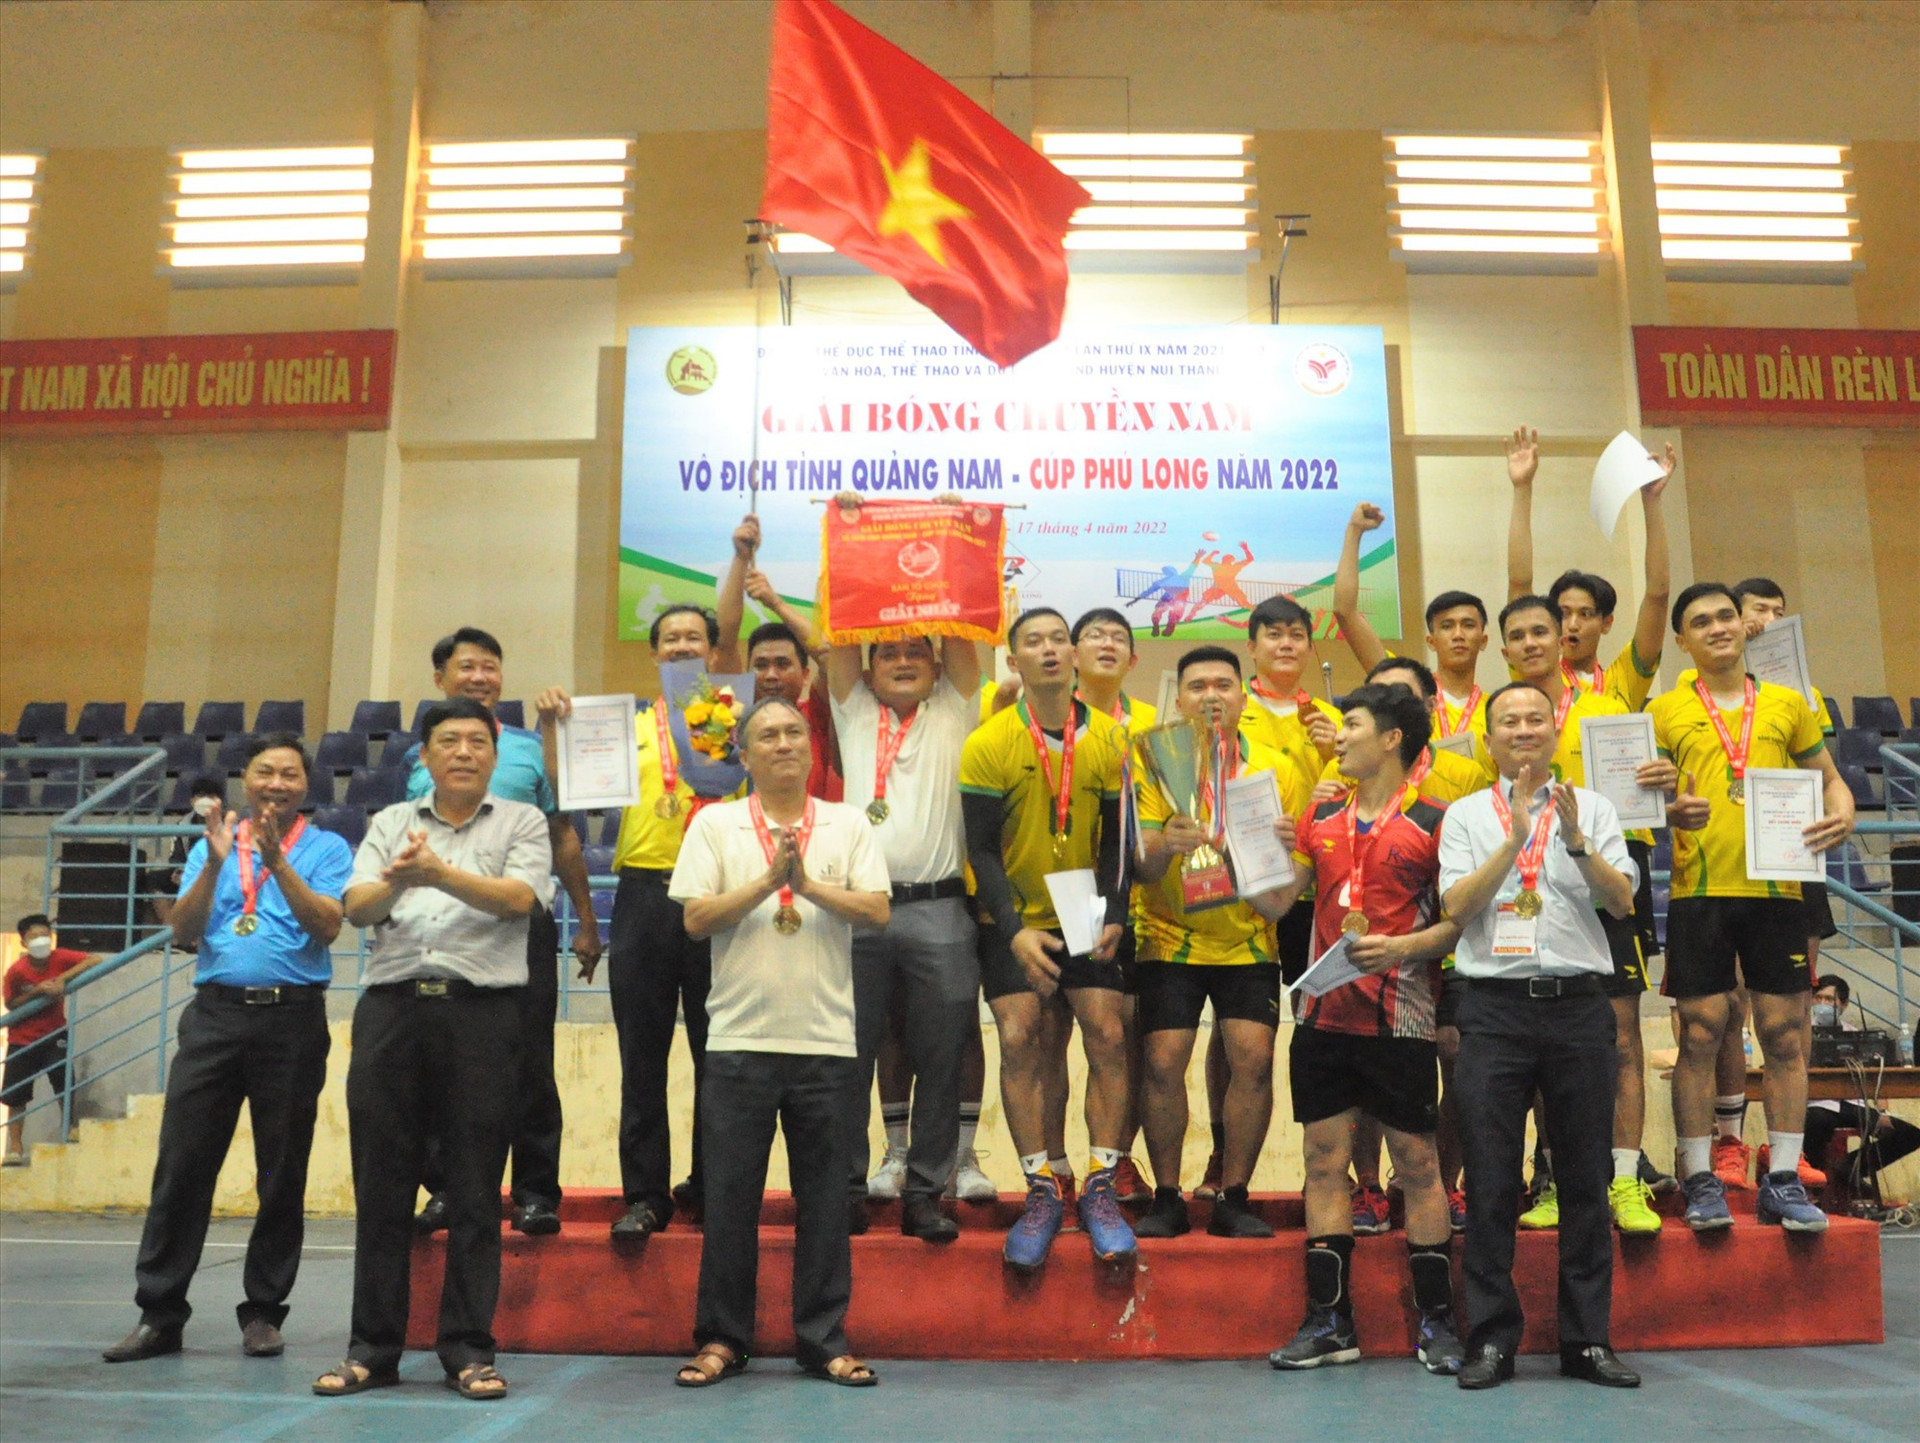 Với việc đoạt chức vô địch, đội bóng chuyền nam Núi Thành được lãnh đạo huyện khen thưởng. Ảnh: T.V